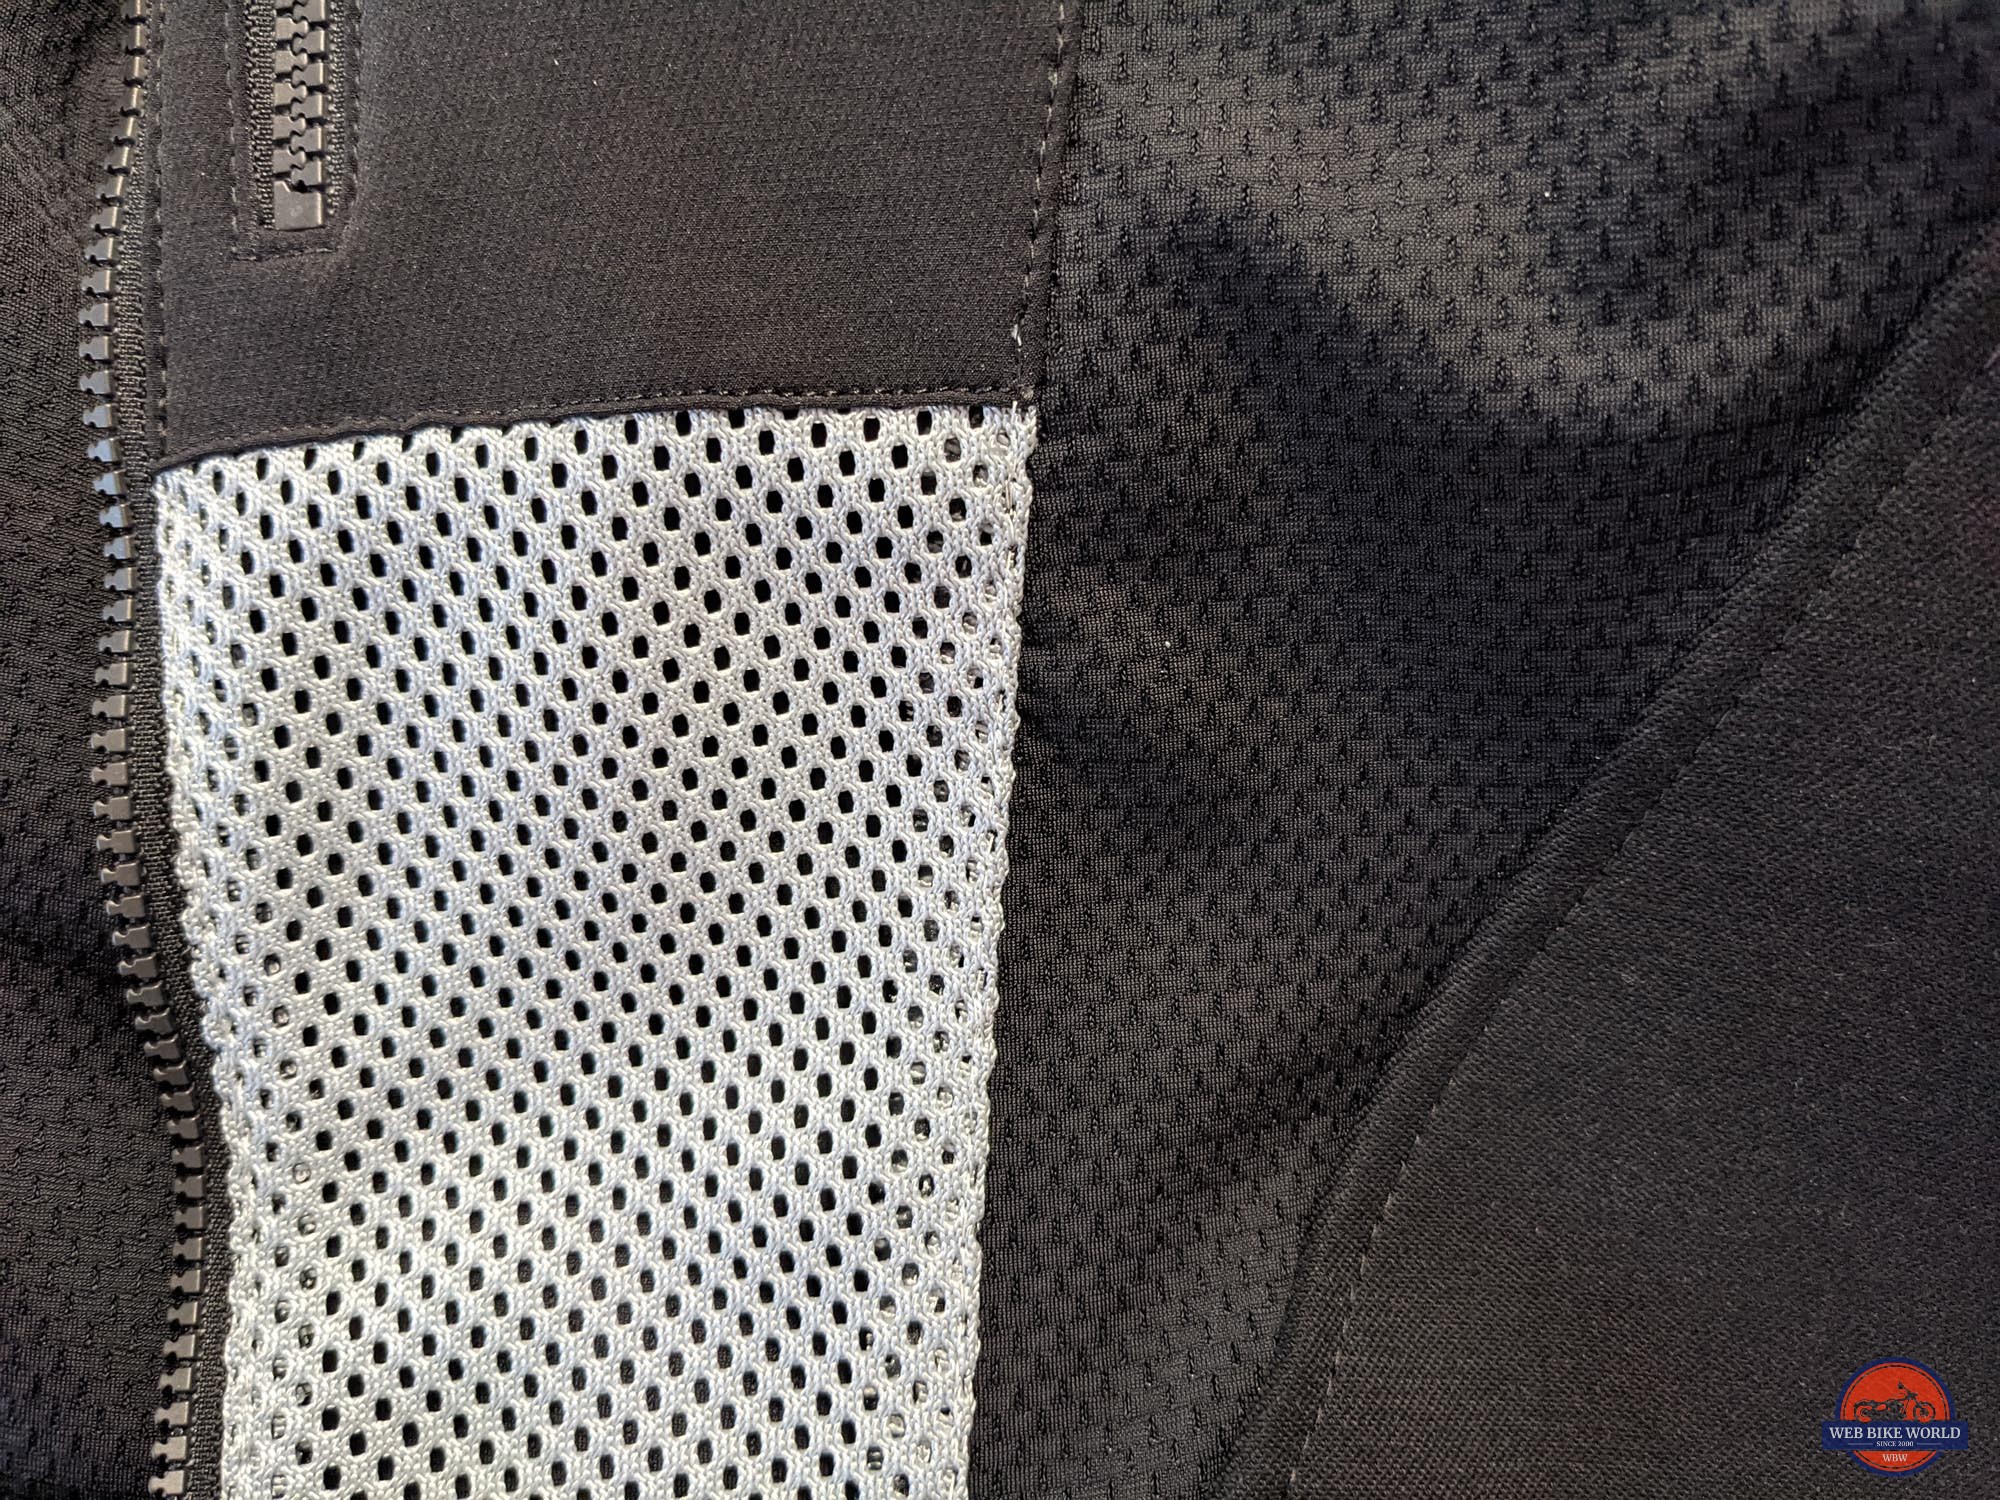 Découvrir la veste de protection Knox Urbane Pro, une armure efficace.